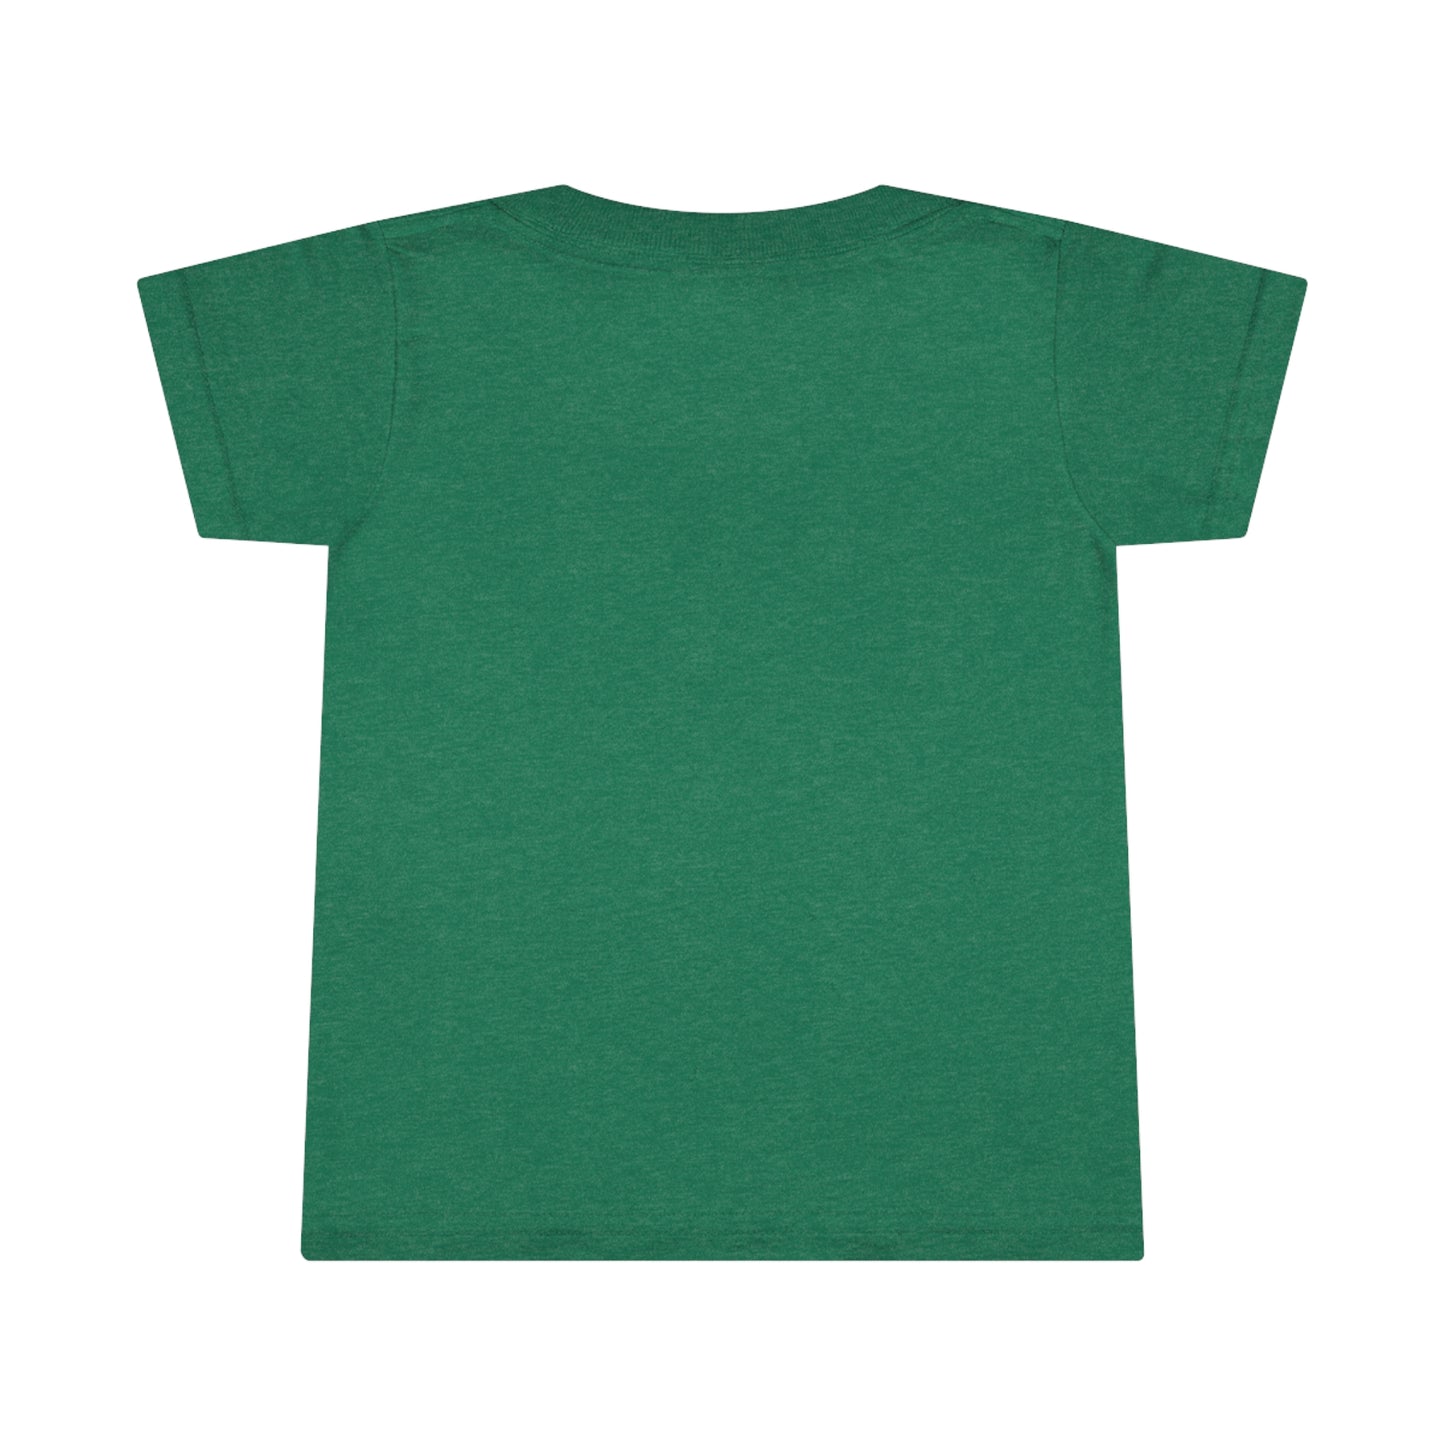 Toddler T-shirt - Bison w/ "COLORADO"